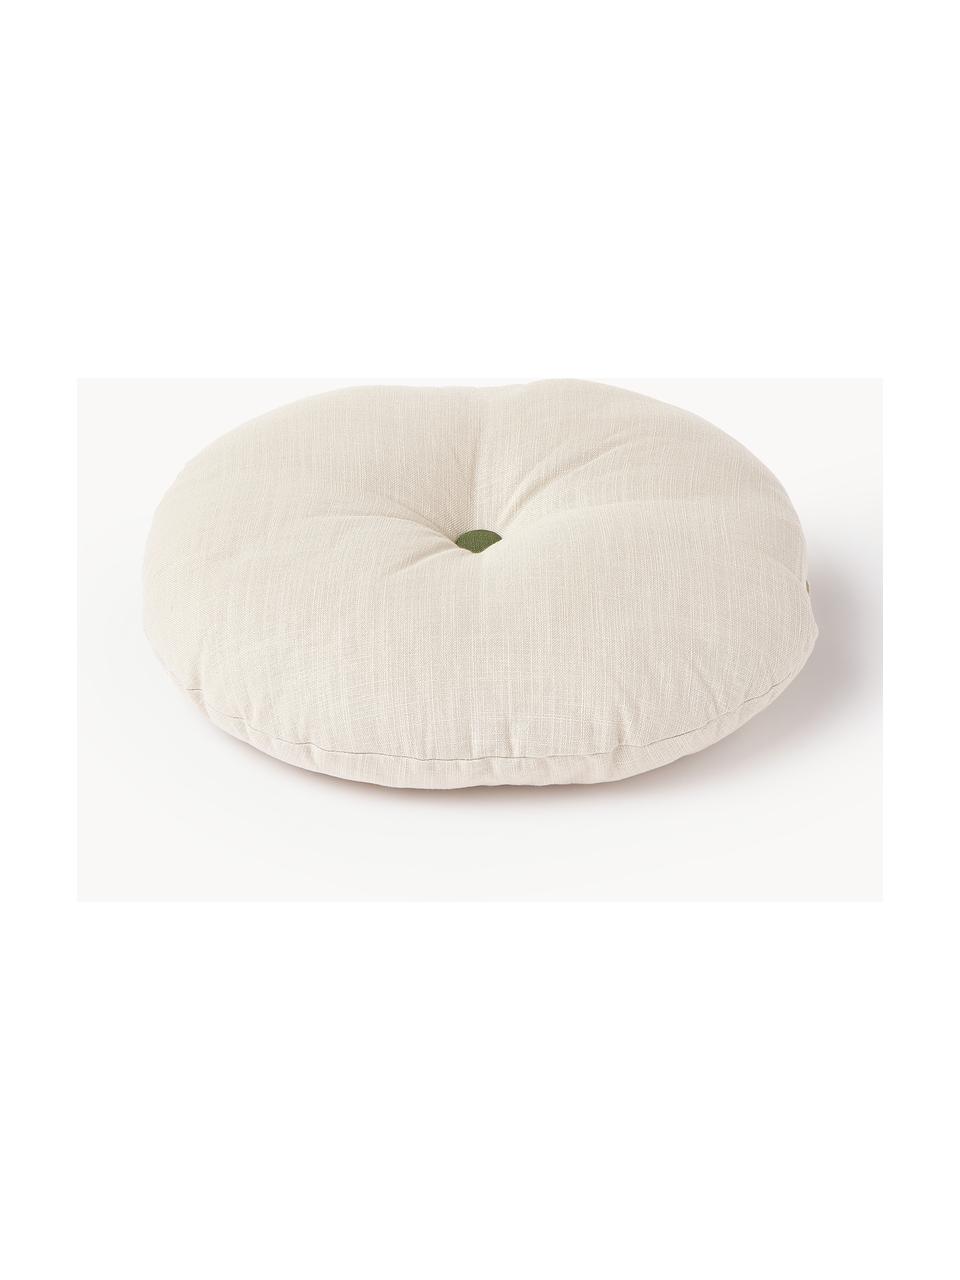 Okrągła poduszka dekoracyjna Devi, Tapicerka: 100% bawełna, Jasny beżowy, Ø 35 cm